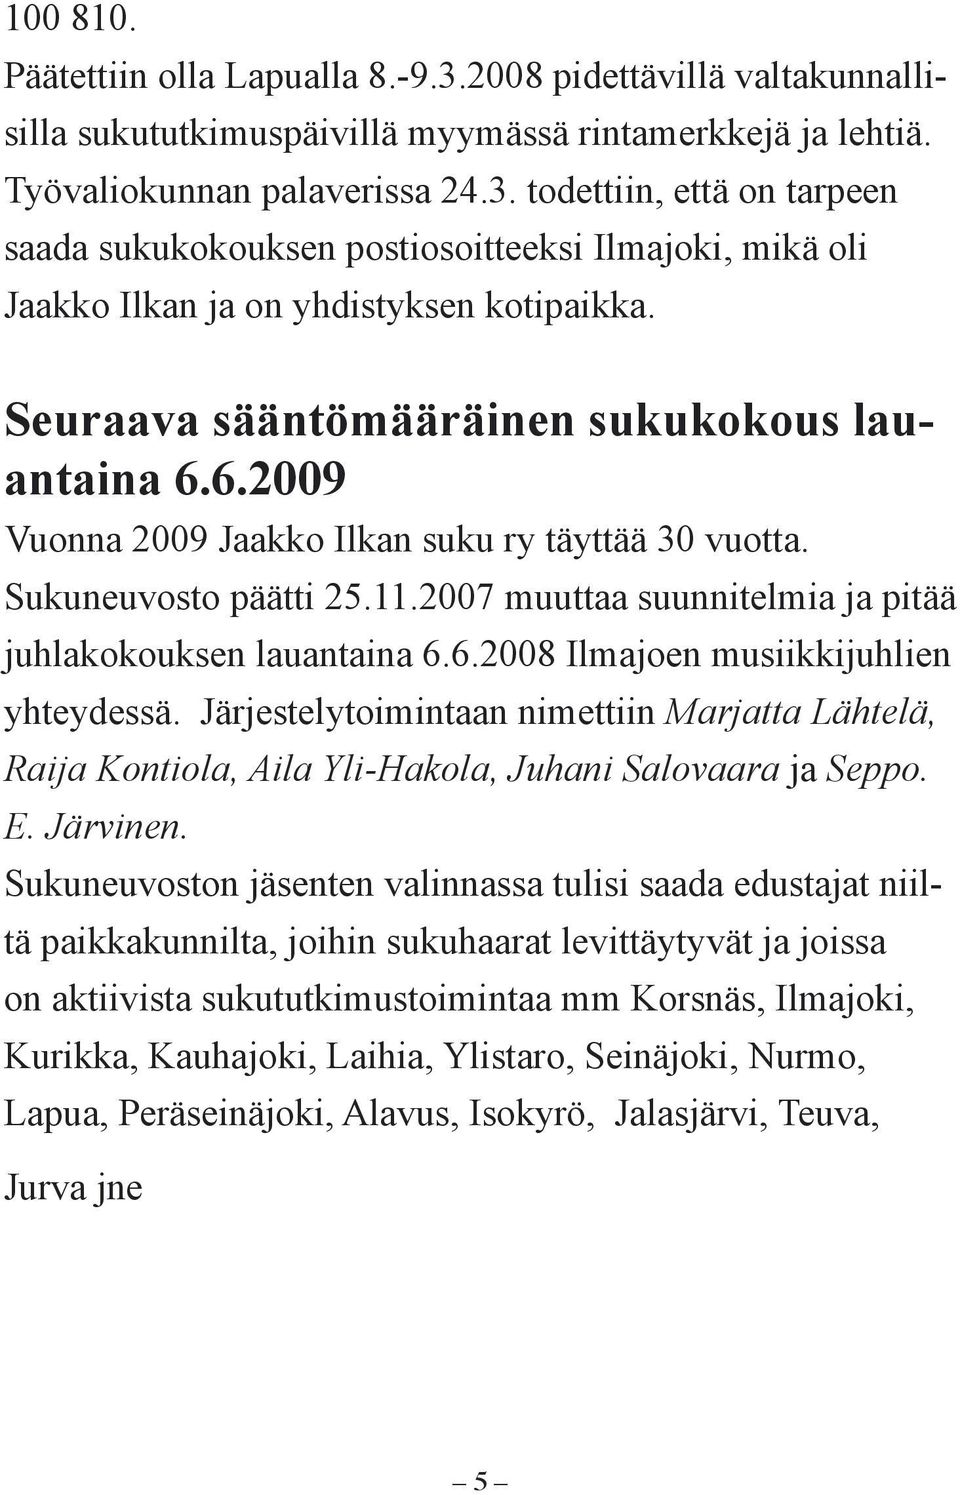 Järjestelytoimintaan nimettiin Marjatta Lähtelä, Raija Kontiola, Aila Yli-Hakola, Juhani Salovaara ja Seppo. E. Järvinen.